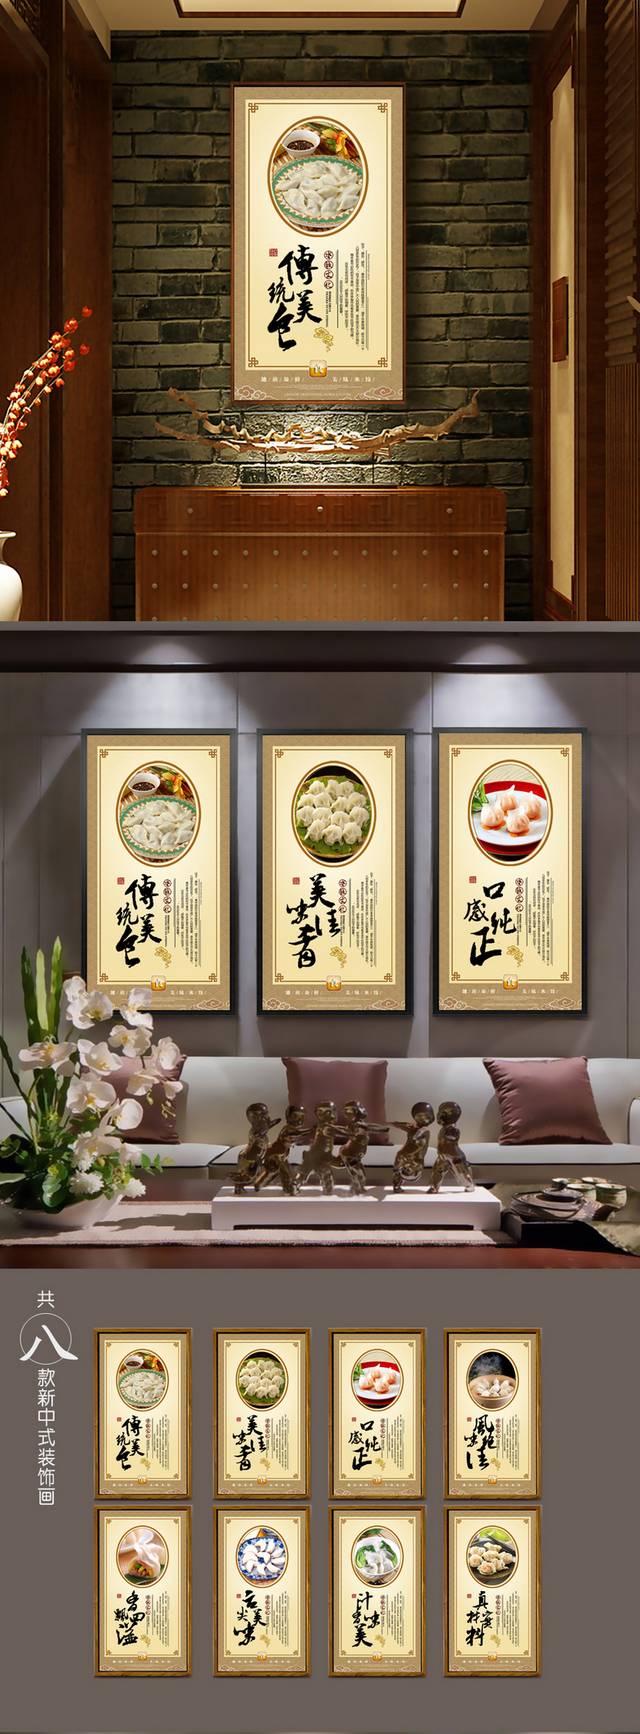 中式古典水饺展板宣传海报